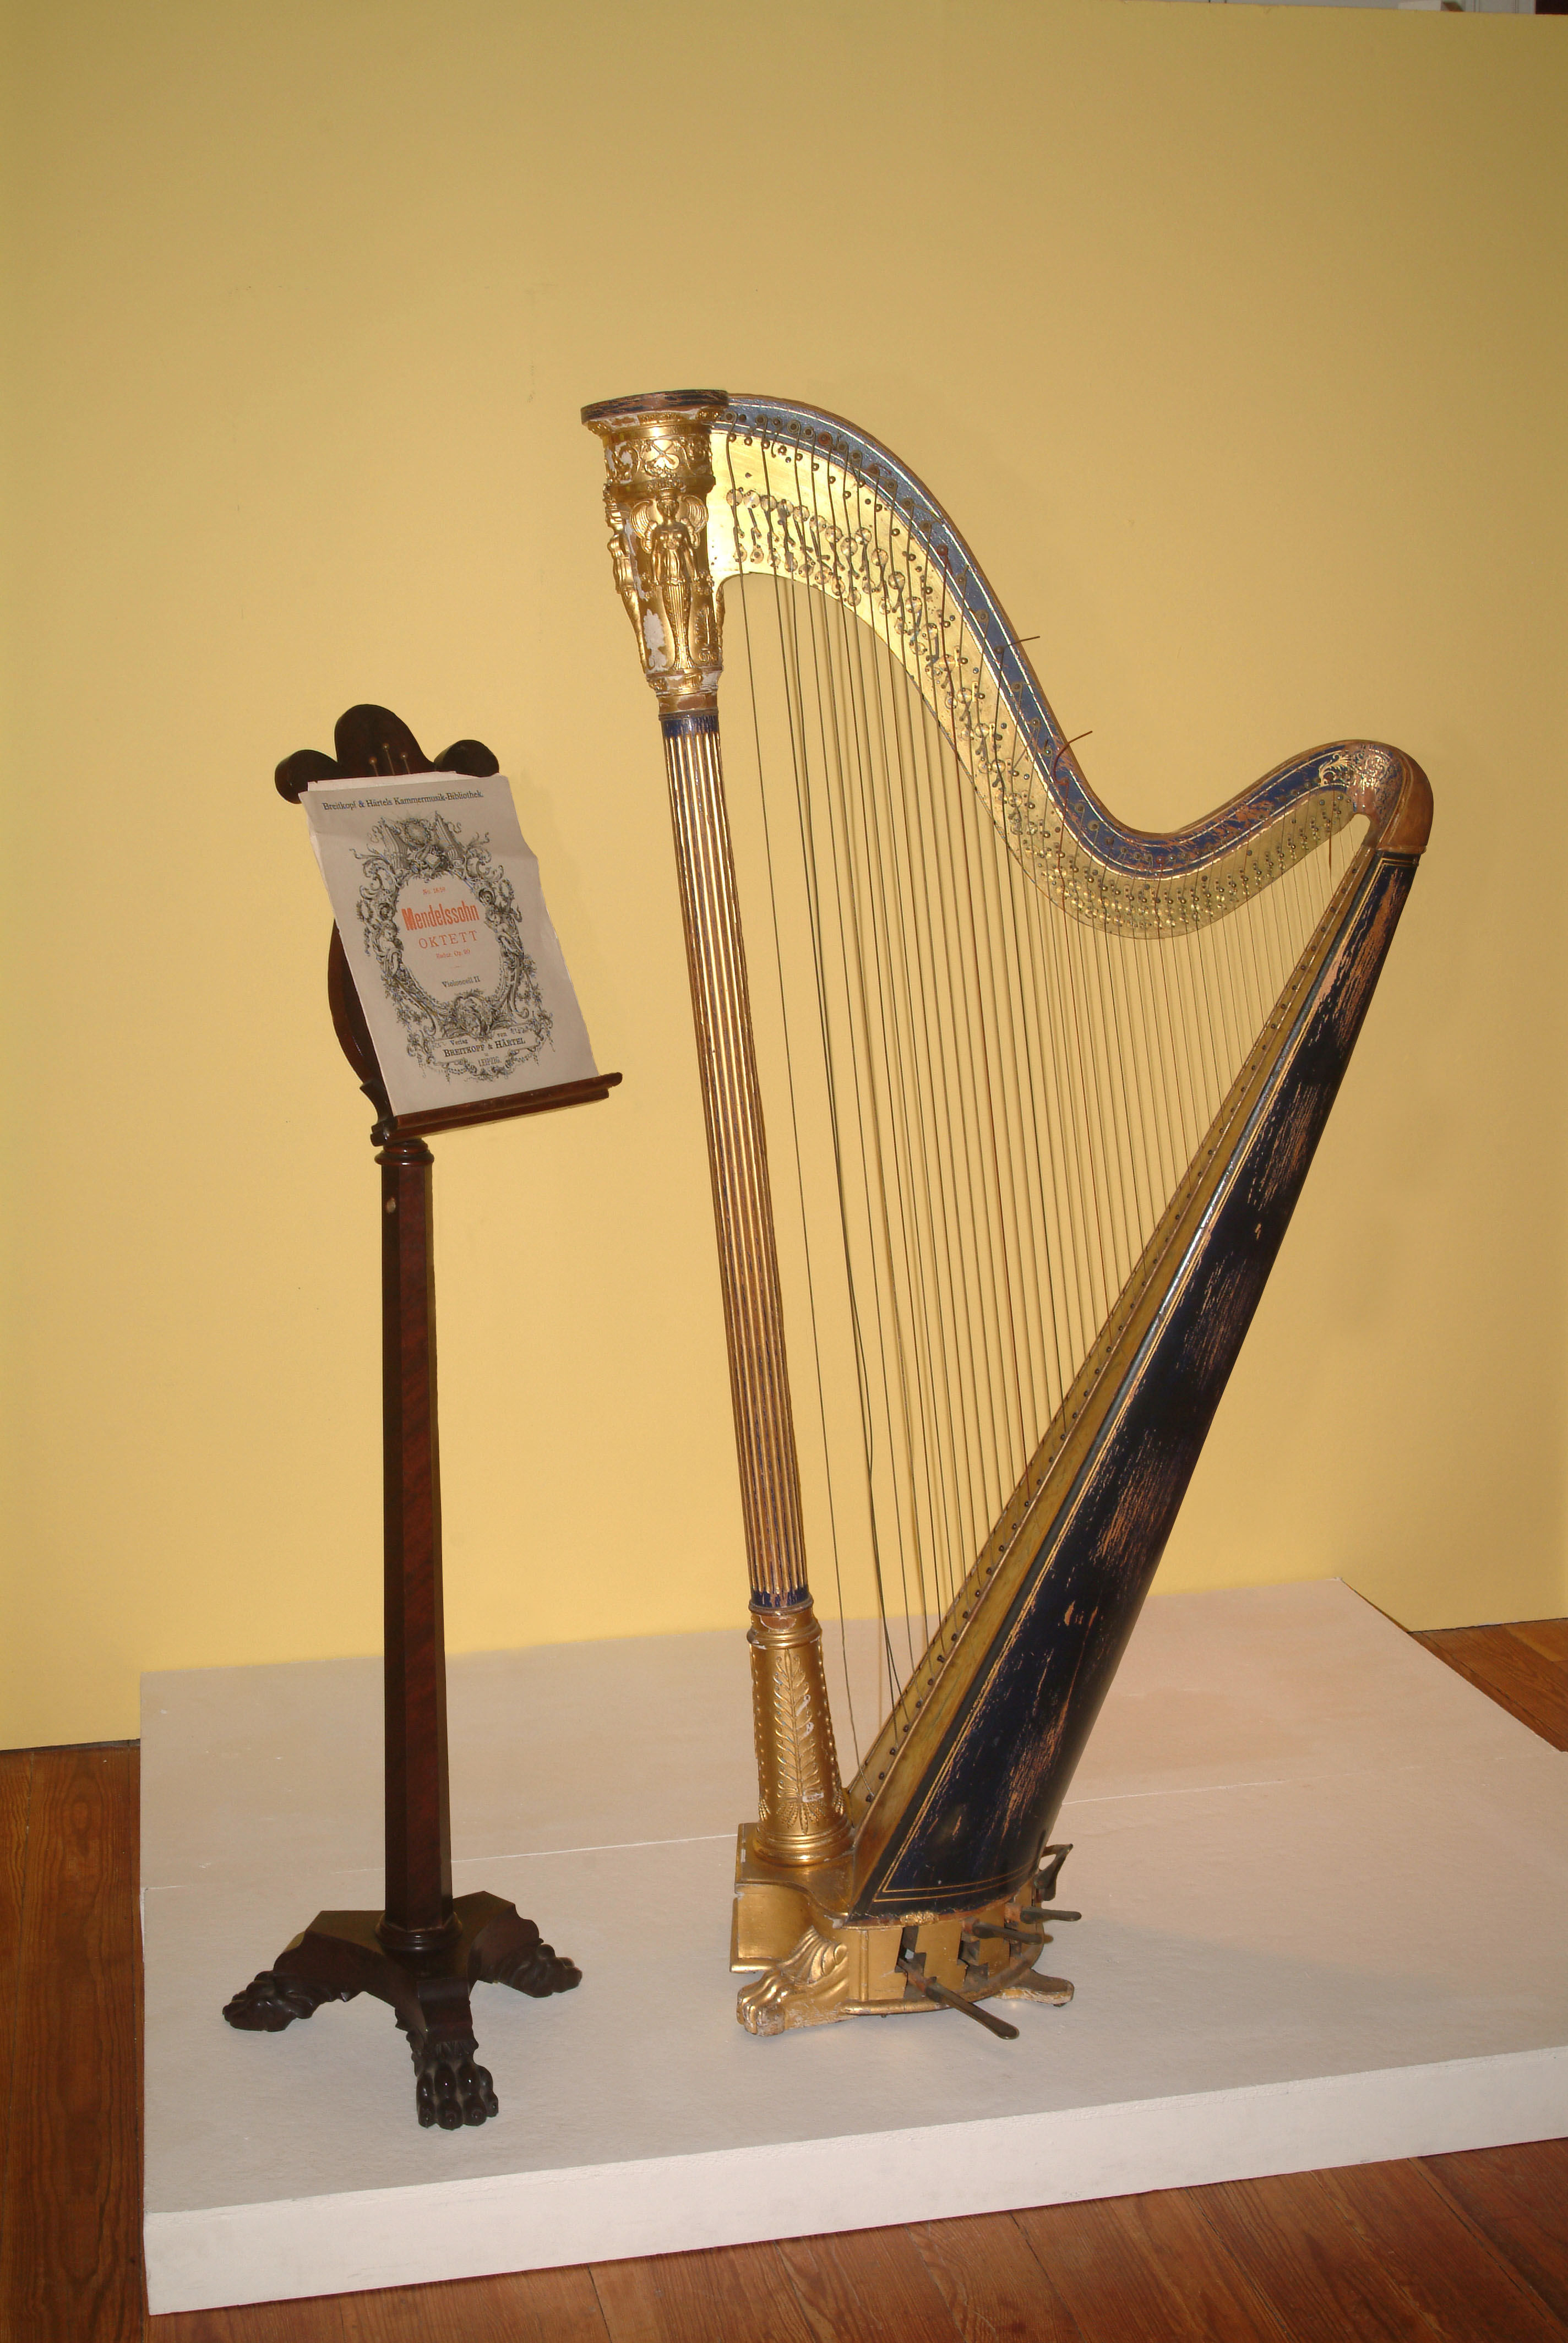 Un atril de madera con partituras se encuentra junto a un gran arpa.